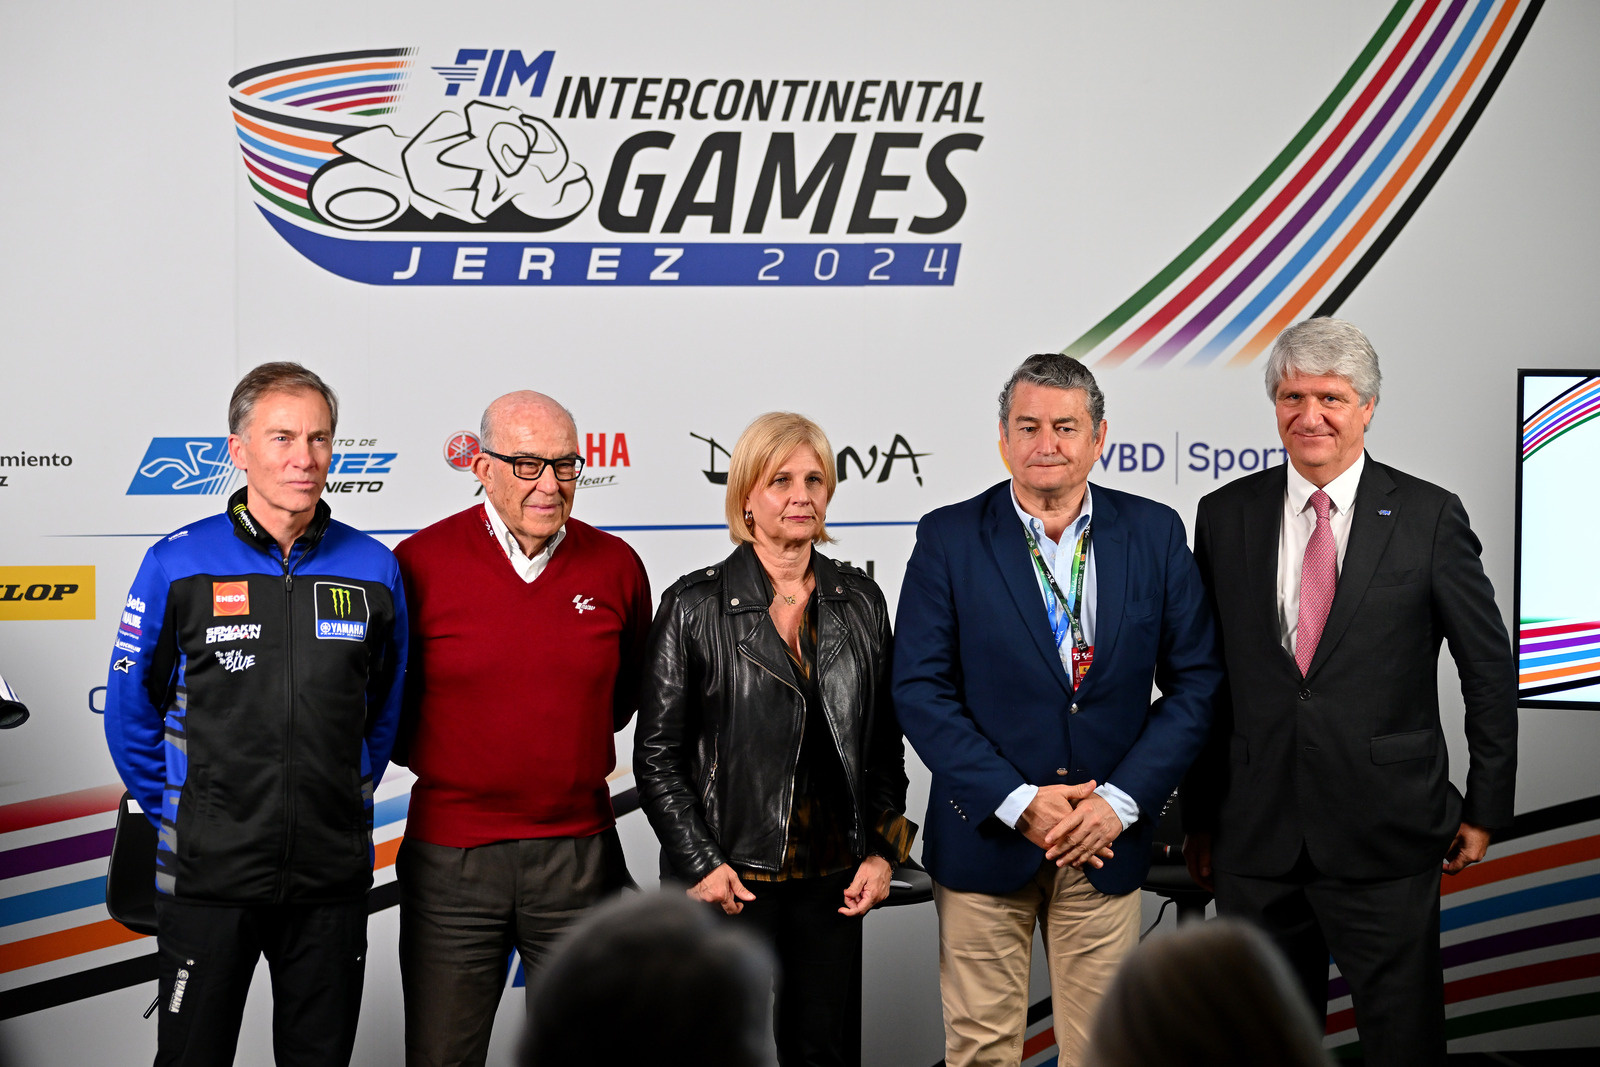 Presentazione ufficiale dei FIM Intercontinental Games